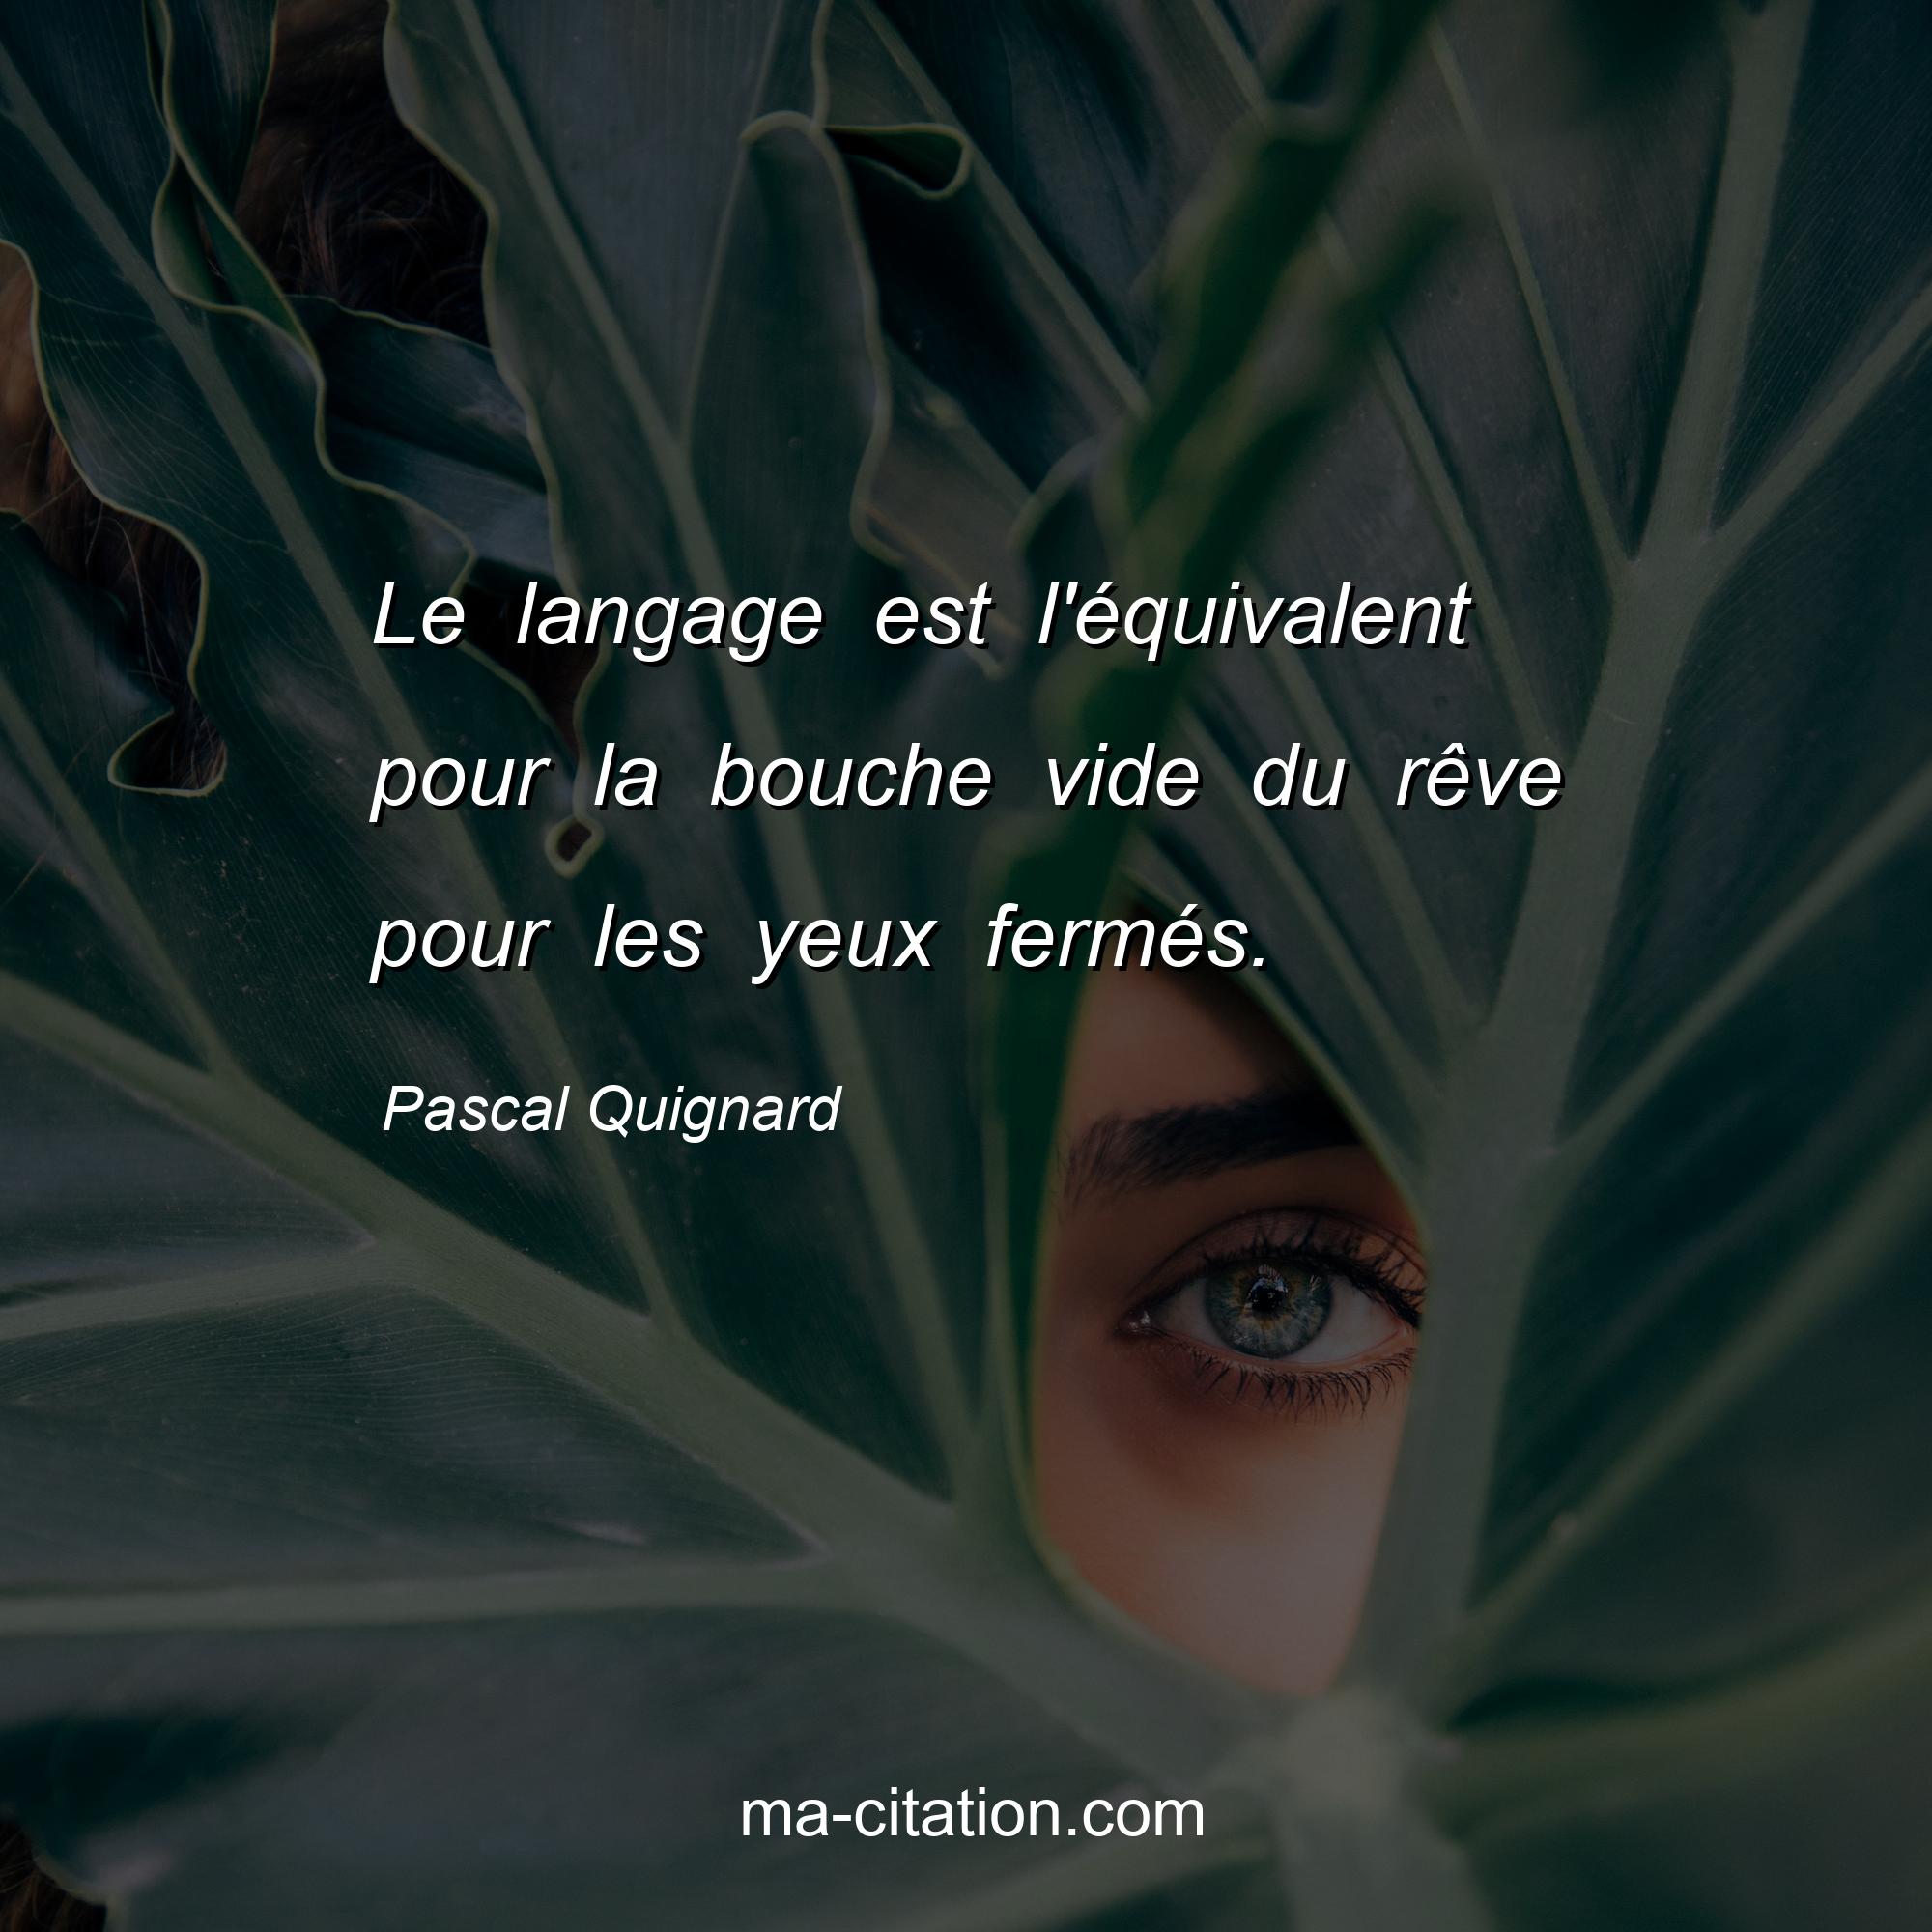 Pascal Quignard : Le langage est l'équivalent pour la bouche vide du rêve pour les yeux fermés.